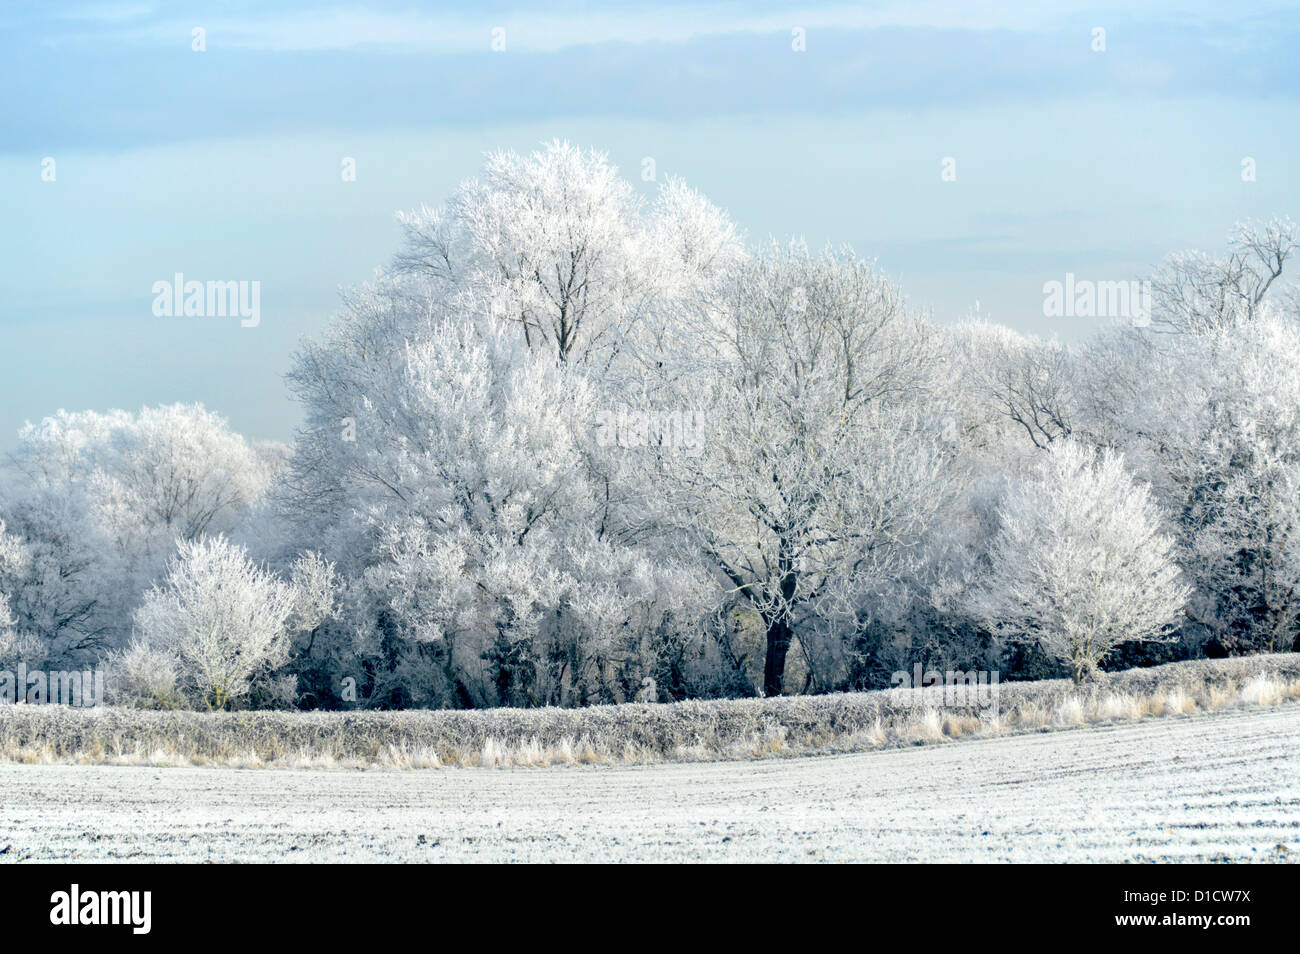 Winter Trees & hedgerow branches dans la campagne rurale froide matin paysage d'arbres couvrant de givre (pas de neige) Brentwood Essex Angleterre Royaume-Uni Banque D'Images